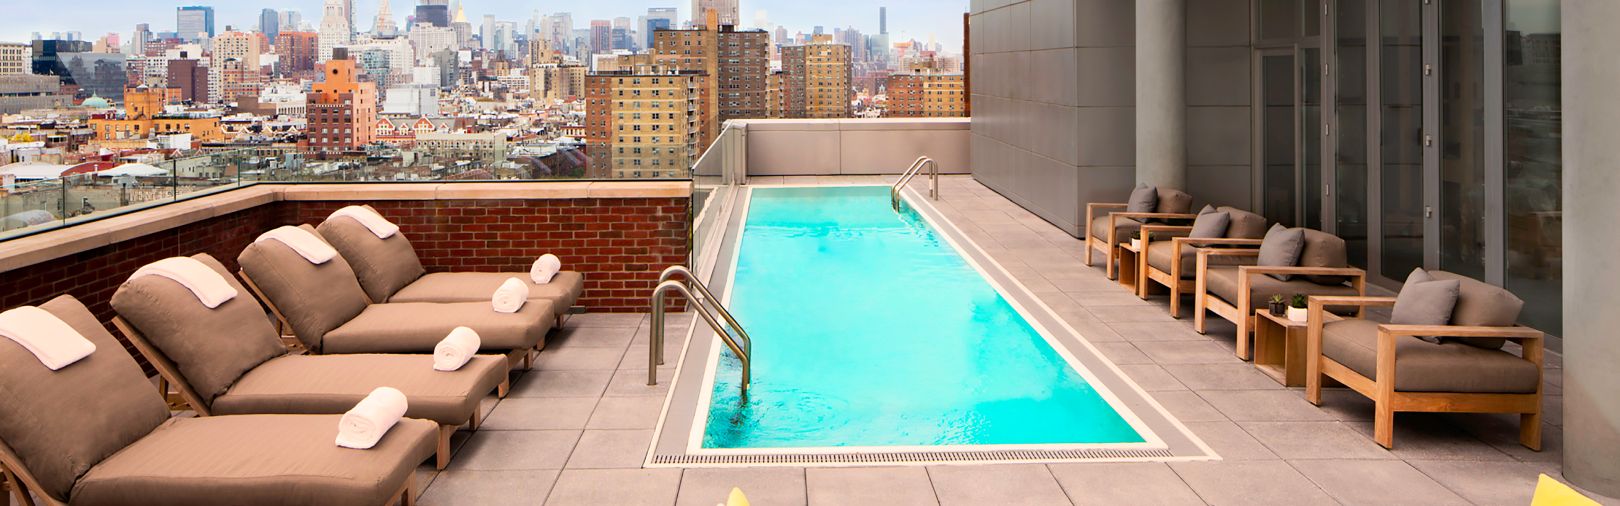 Rooftop outdoor pool overlooking New York City